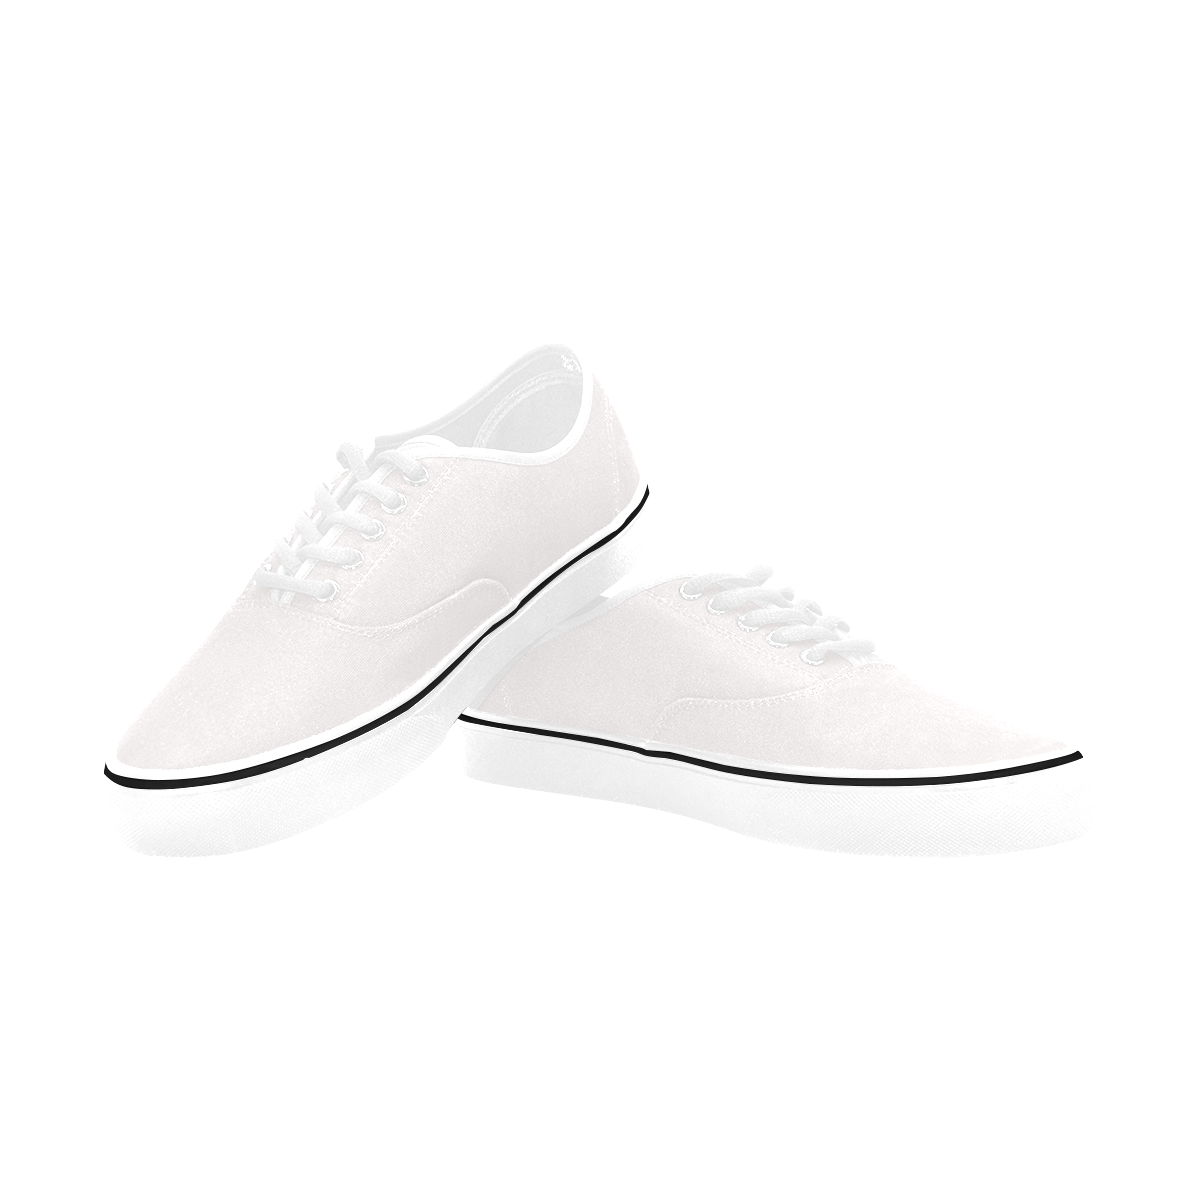 Classic Men's Canvas Low Top Shoes (Model E001-4)